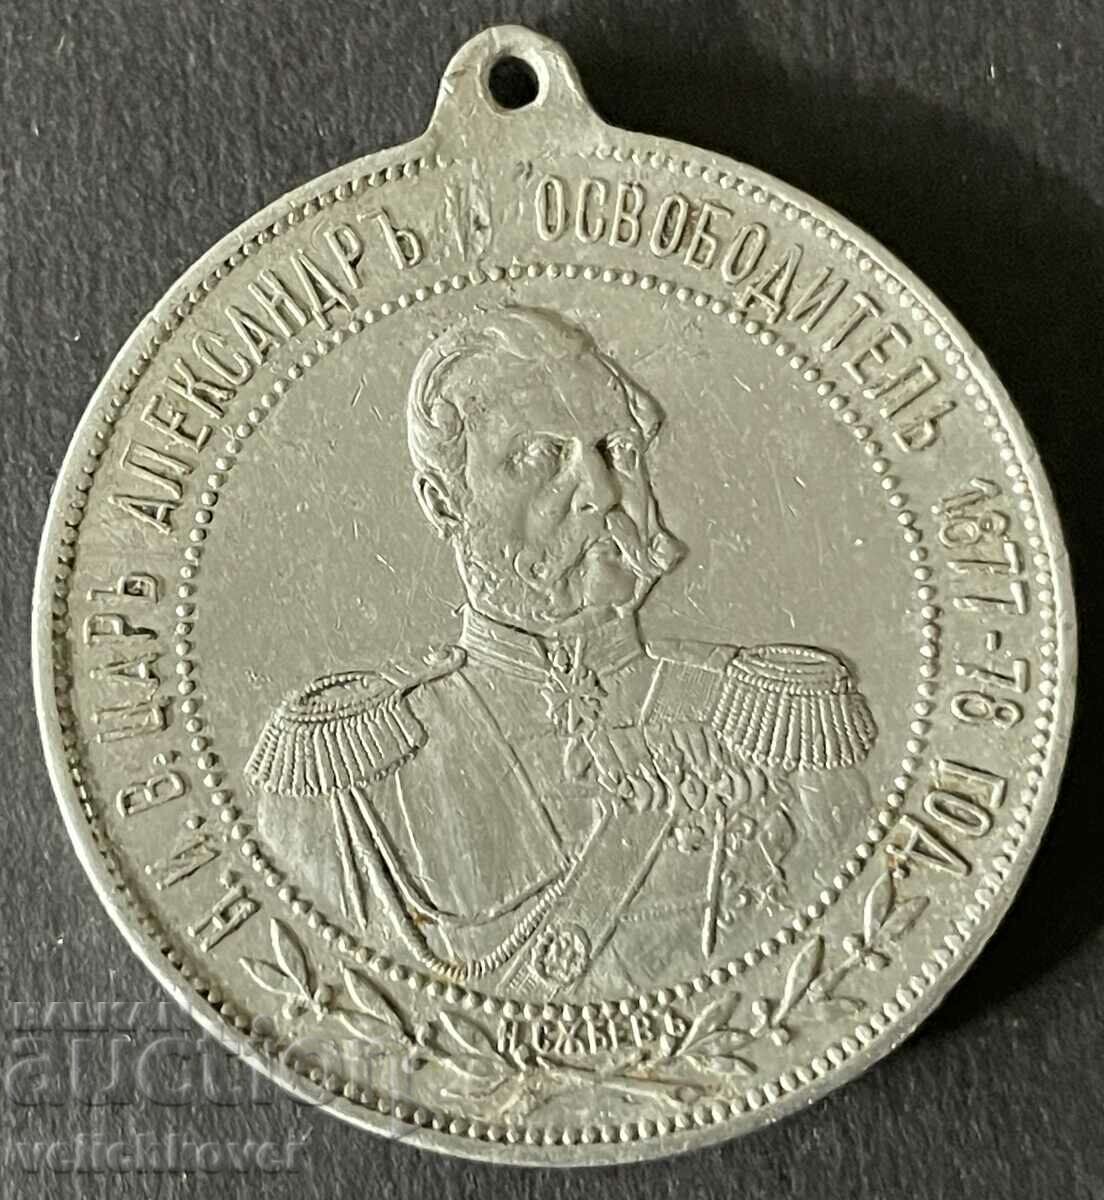 36974 Regatul Bulgariei Medalia Mănăstirea Alexandru II Shipka 19